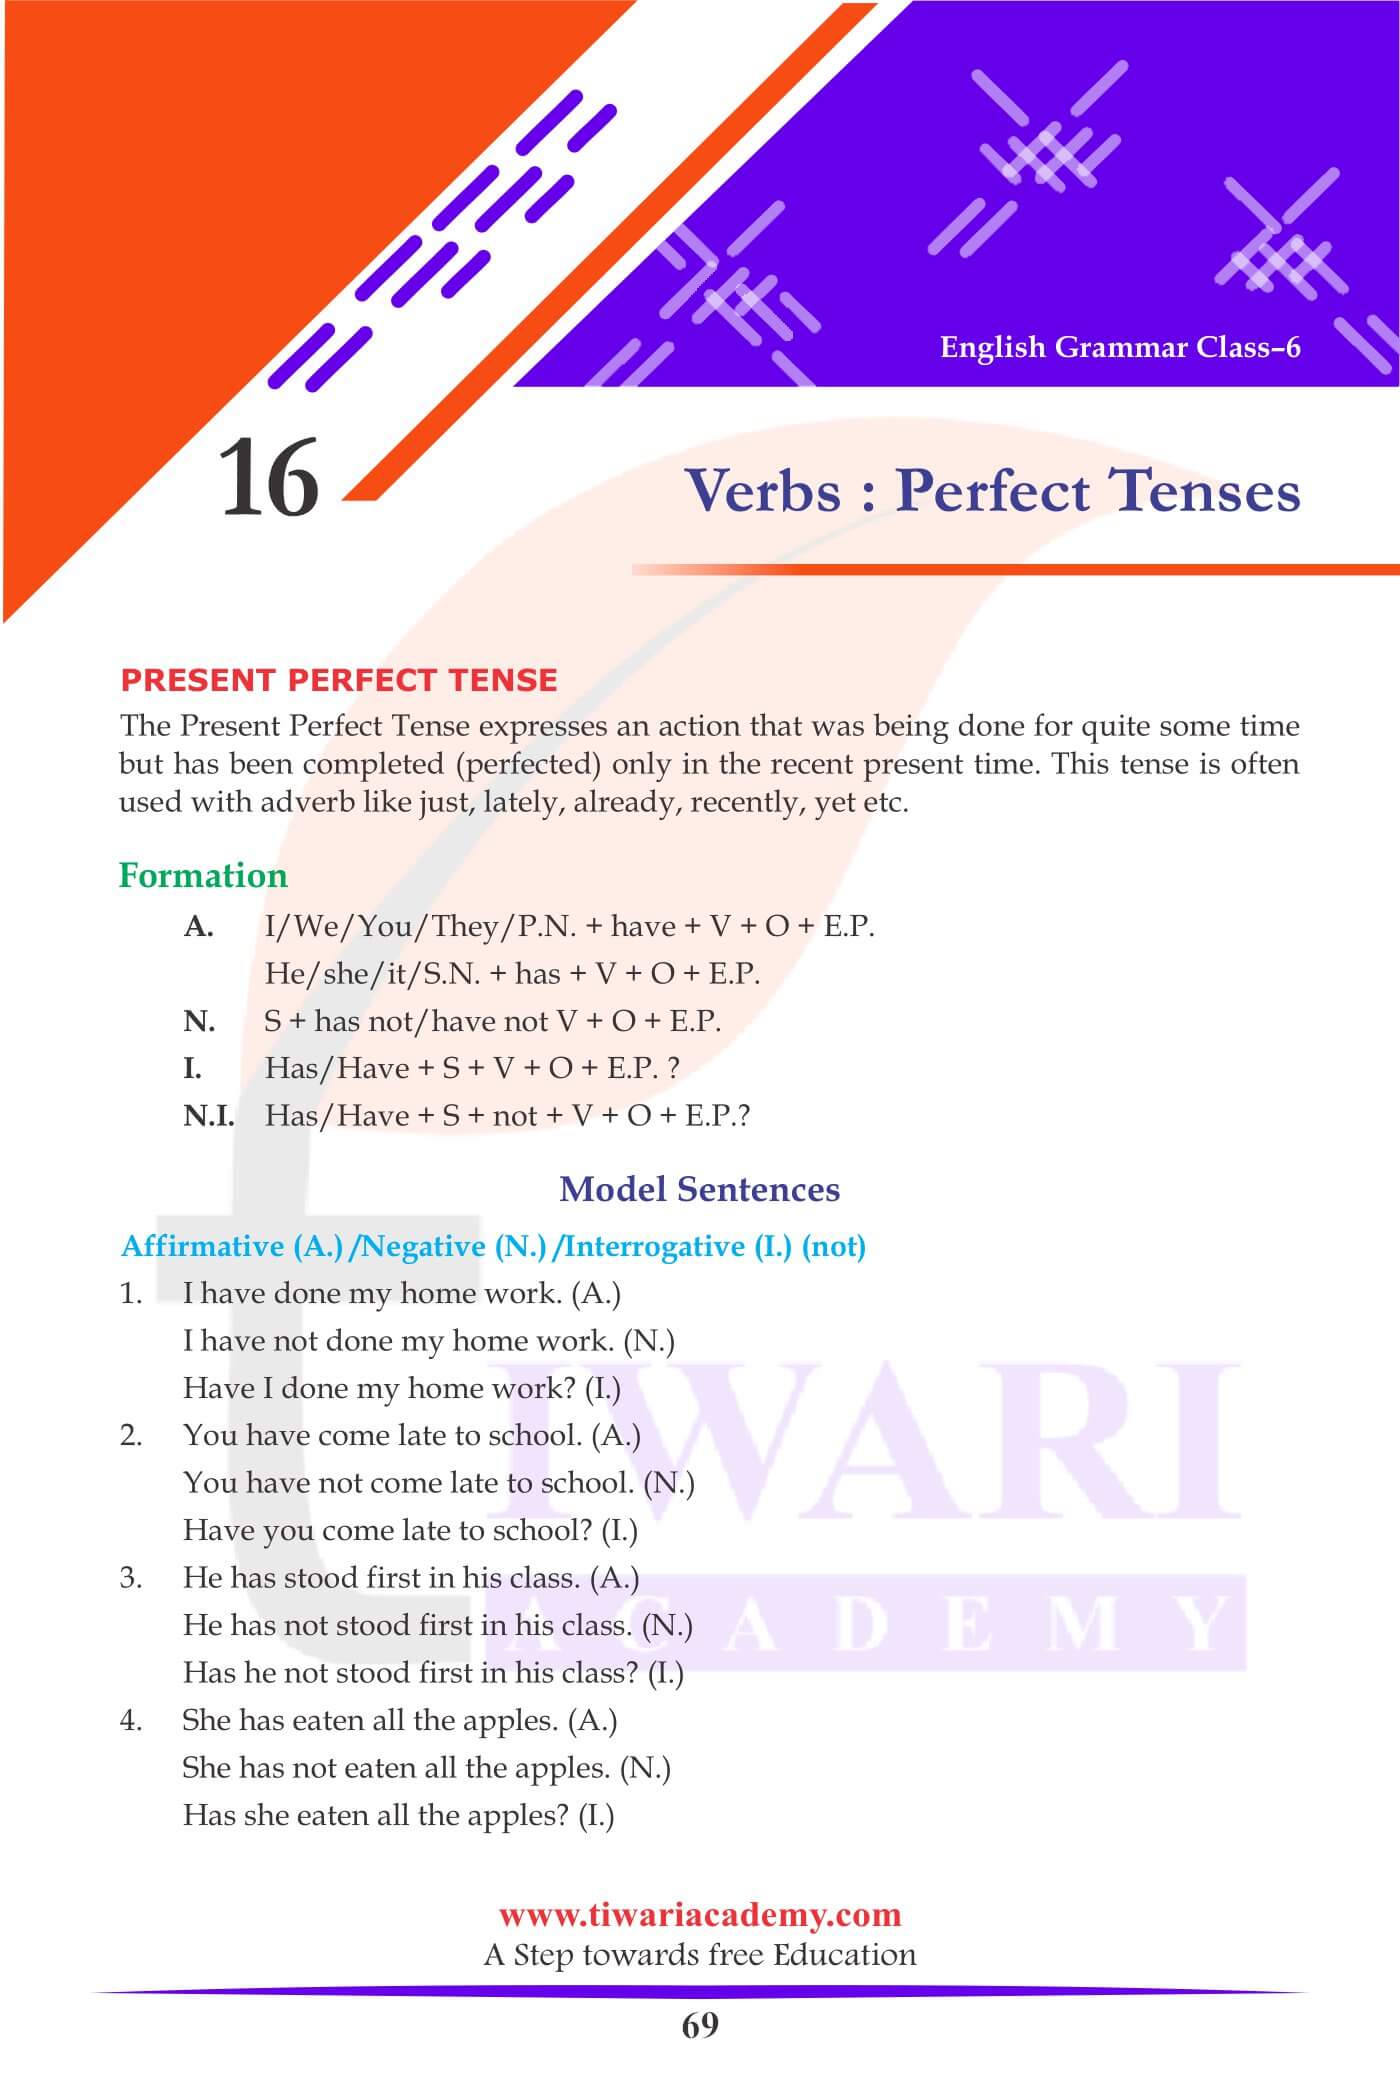 Class 6 English Grammar Chapter 16 Verbs Perfect Tense